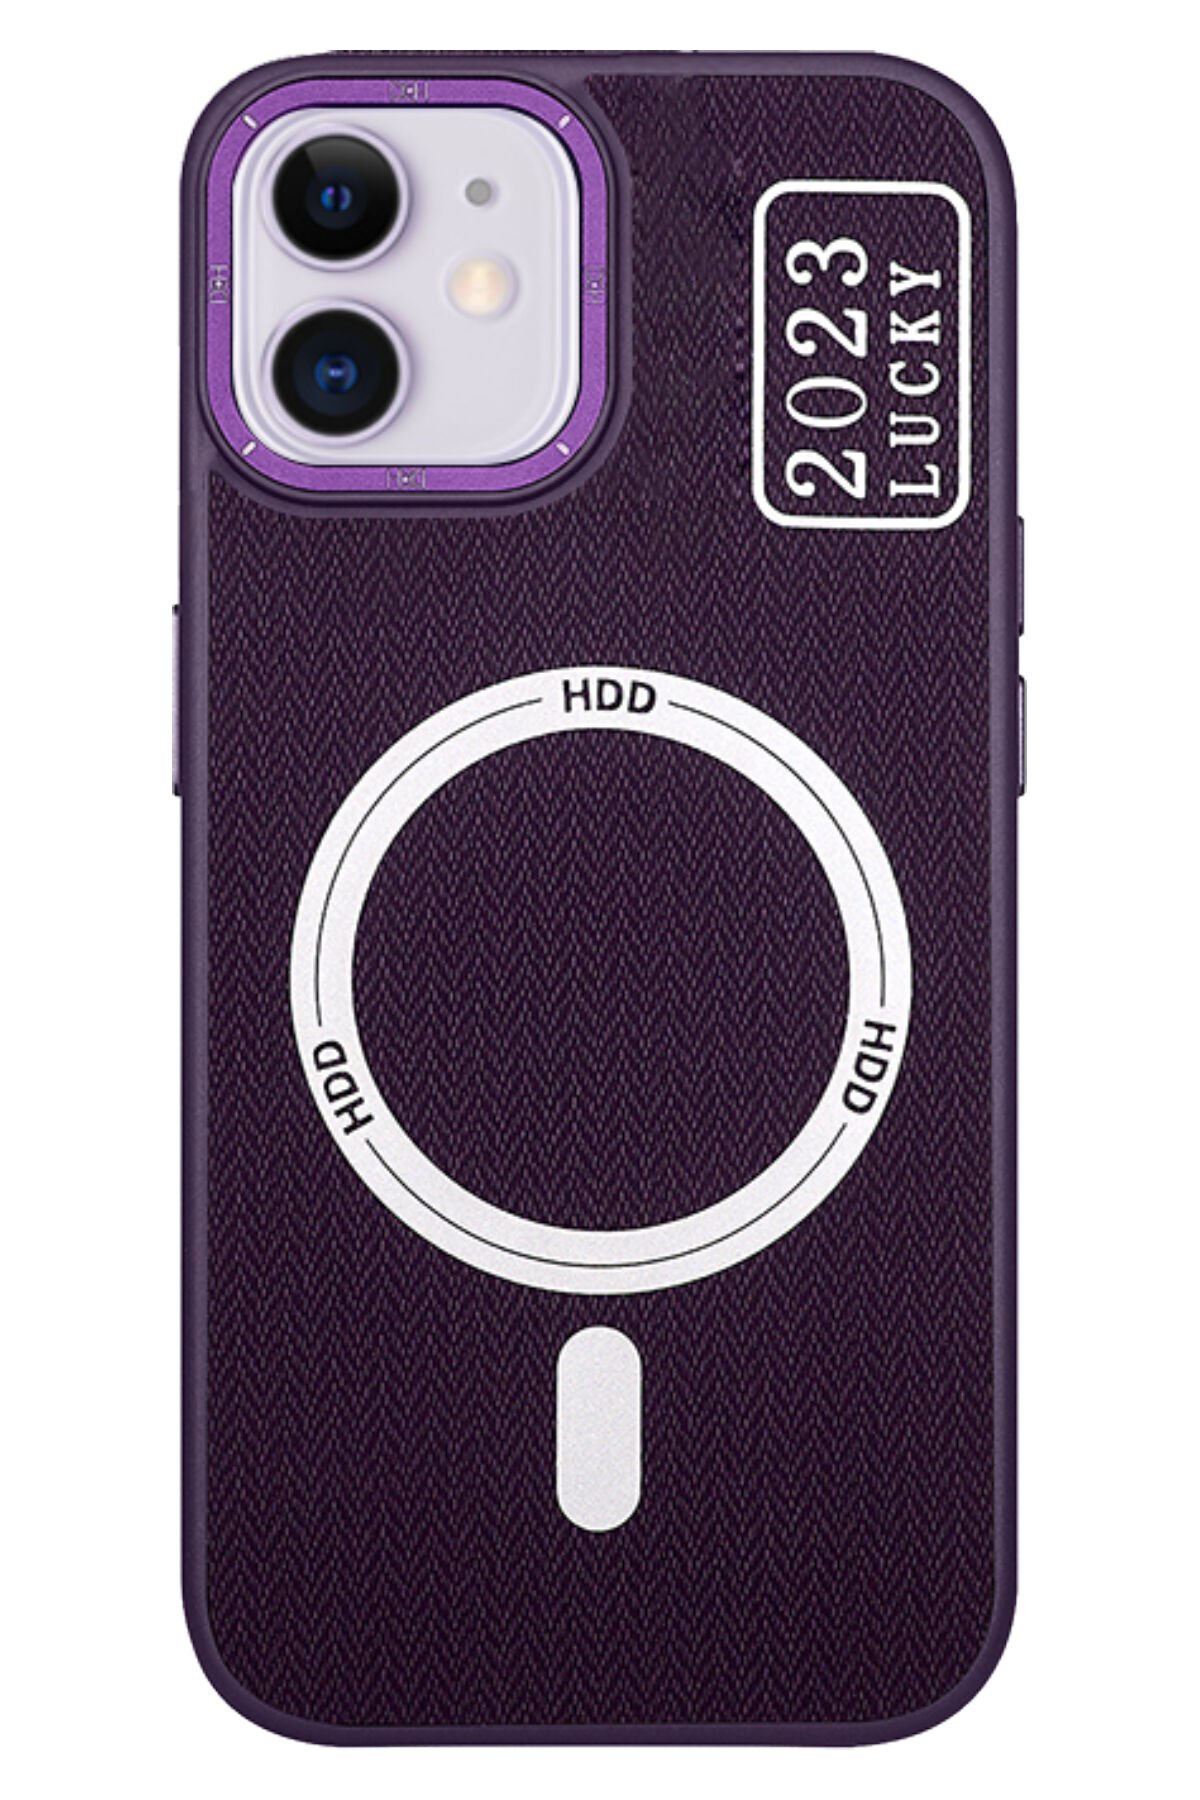 HDD iPhone 11 Kılıf HBC-155 Lizbon Kapak - Lacivert